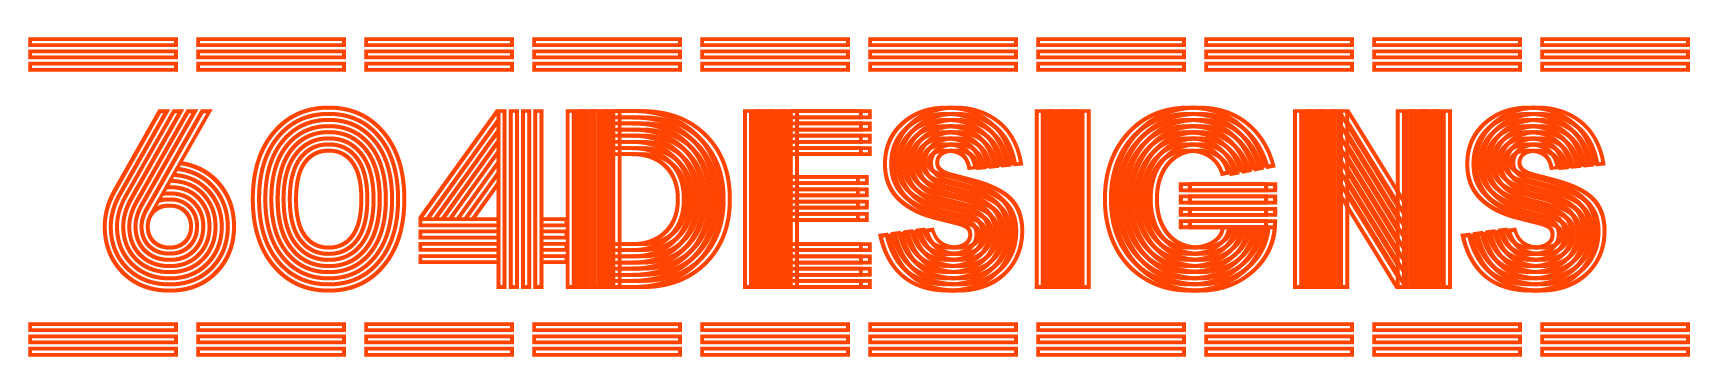 604_Designs